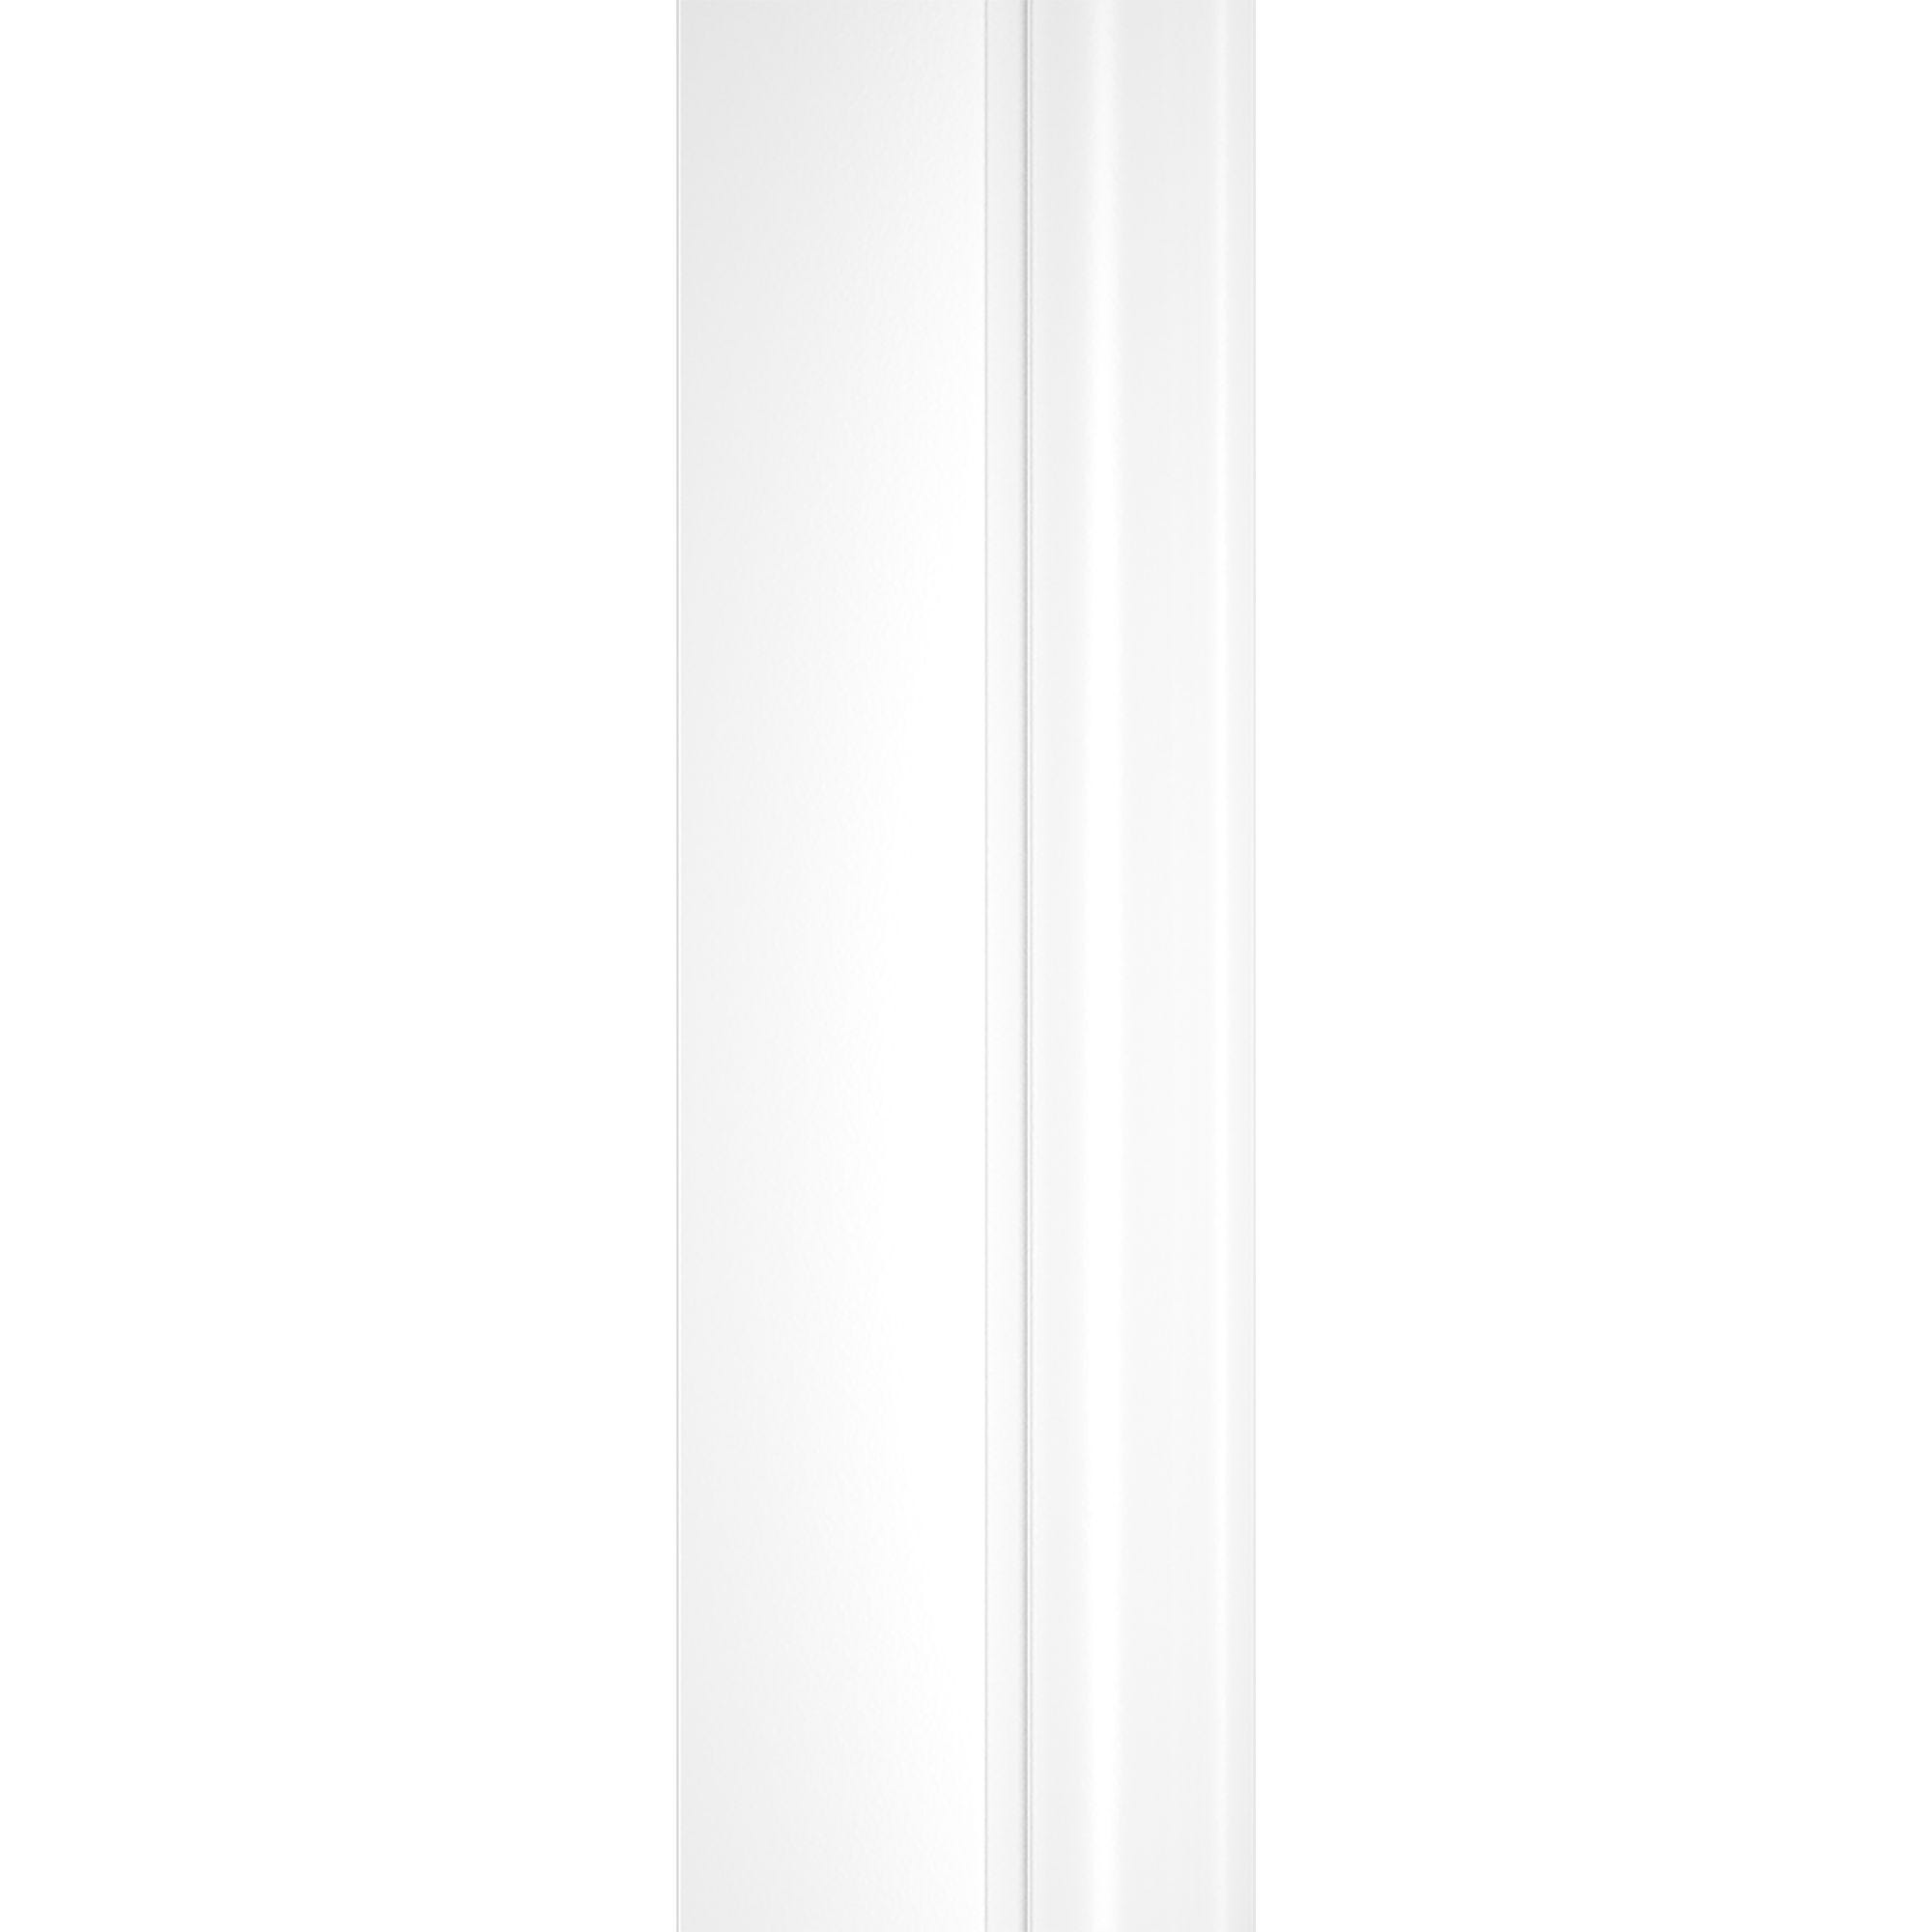 Schulte pare-baignoire rabattable pivotant, 50 x 150 cm, verre 5 mm transparent, paroi de baignoire mobile 1 volet, profilé blanc 3